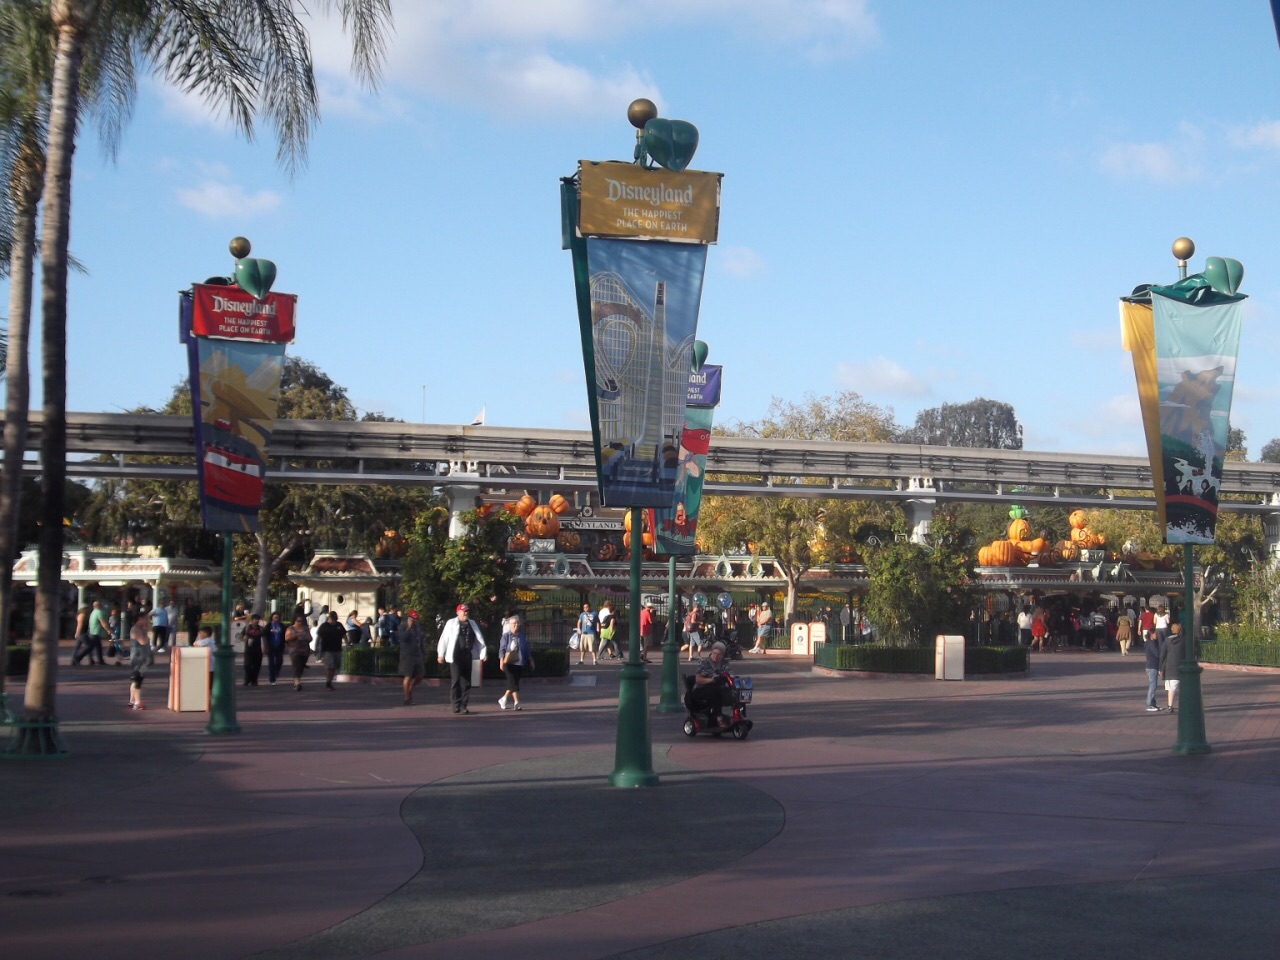 迪士尼冒险乐园 加州迪士尼乐园是最早的迪士尼乐园。乐园分为儿童乐园和冒险乐园，两个乐园门对门，但是不